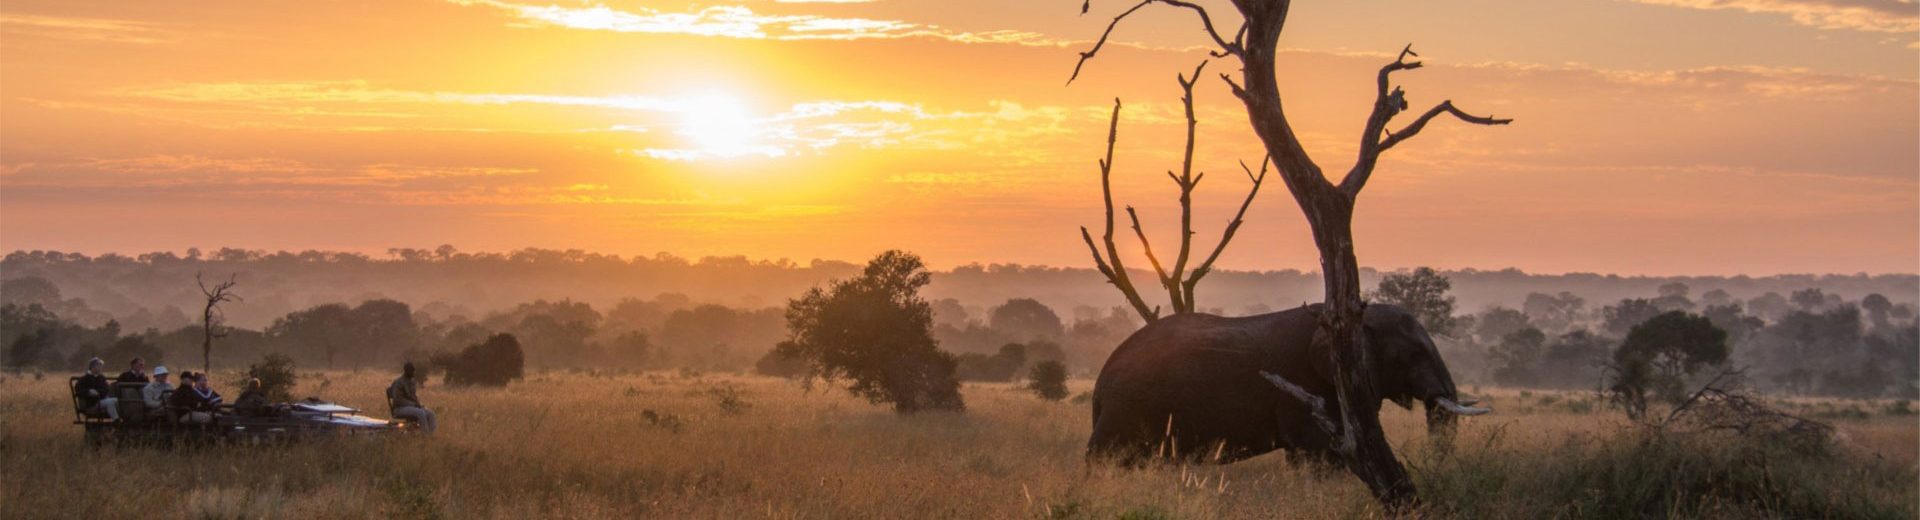 Safáris na África: uma maneira incrível de estar perto da vida selvagem